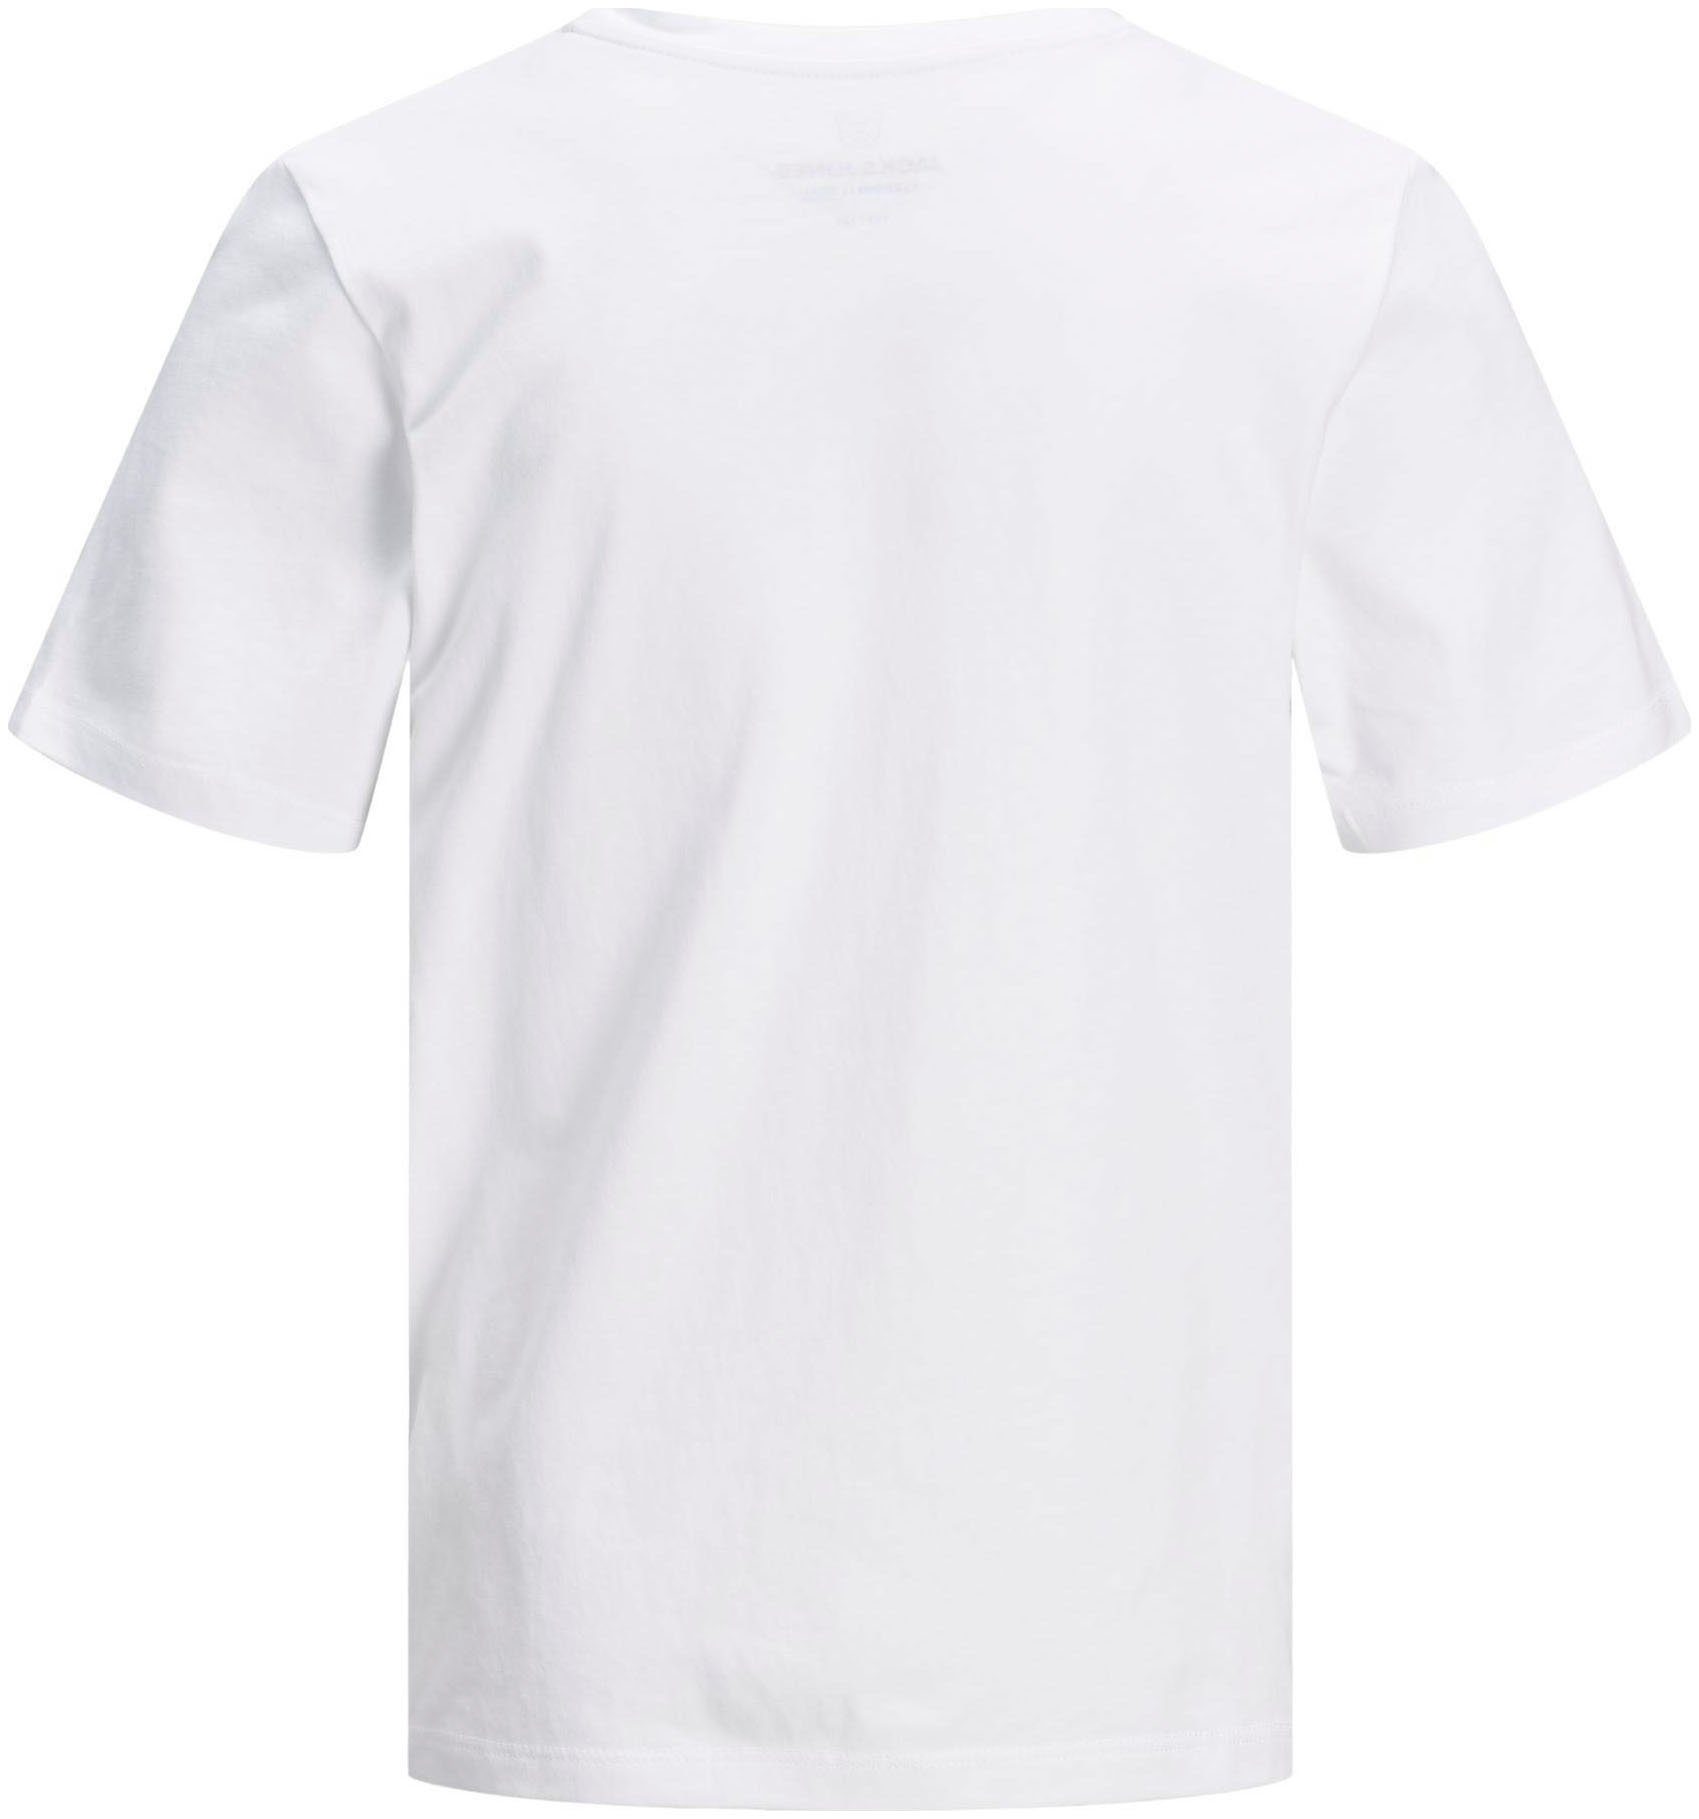 Jack & white SS Jones TEE BASIC T-Shirt Junior JJEORGANIC